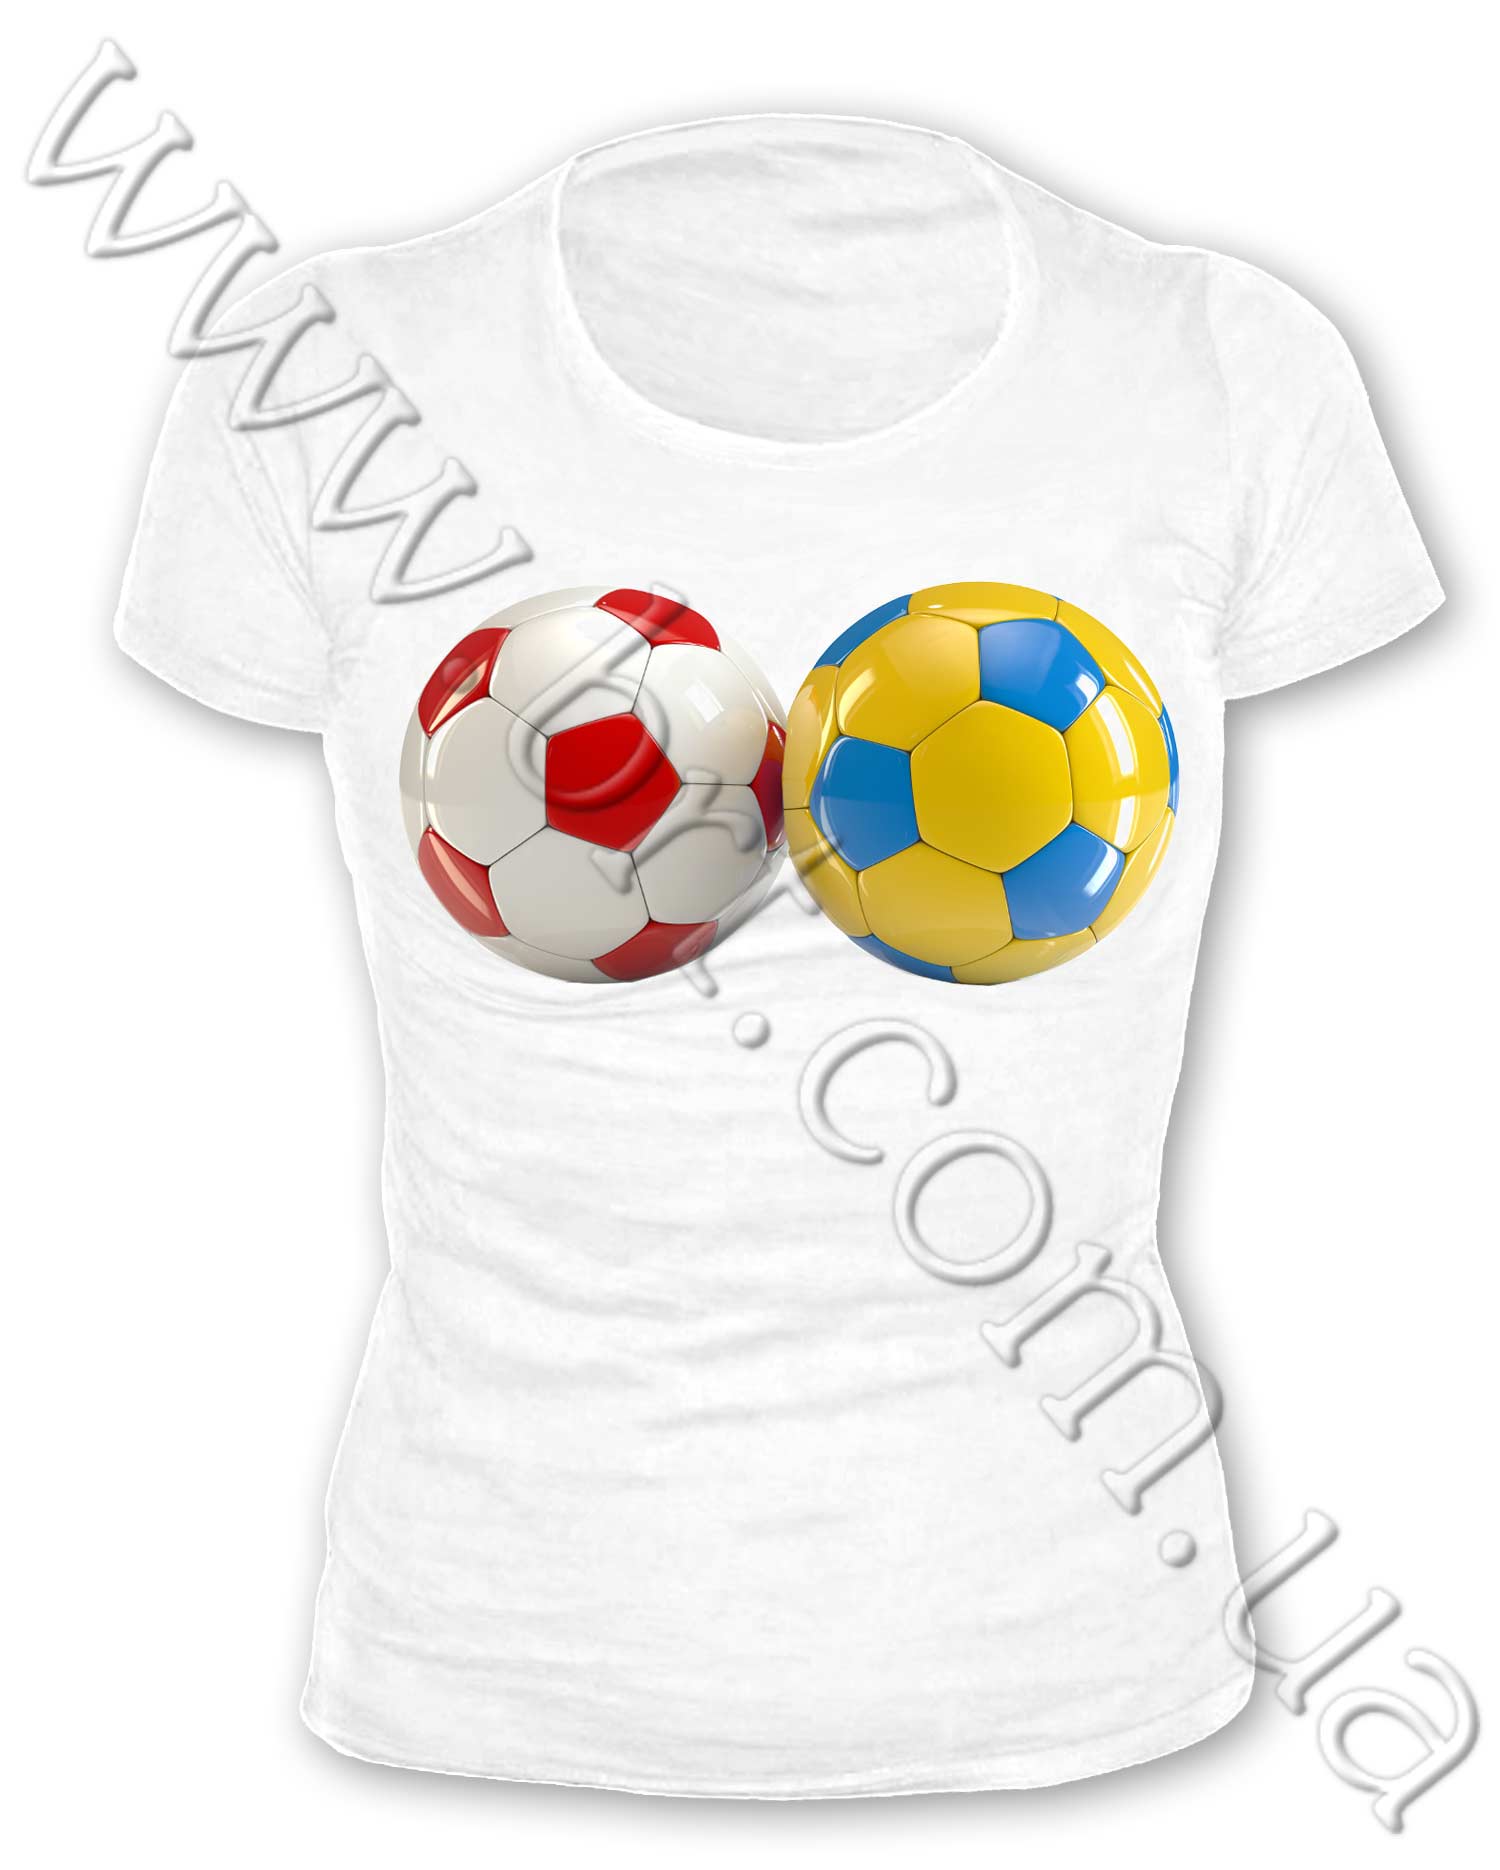 Футболки с логотипом евро 2012 заказать